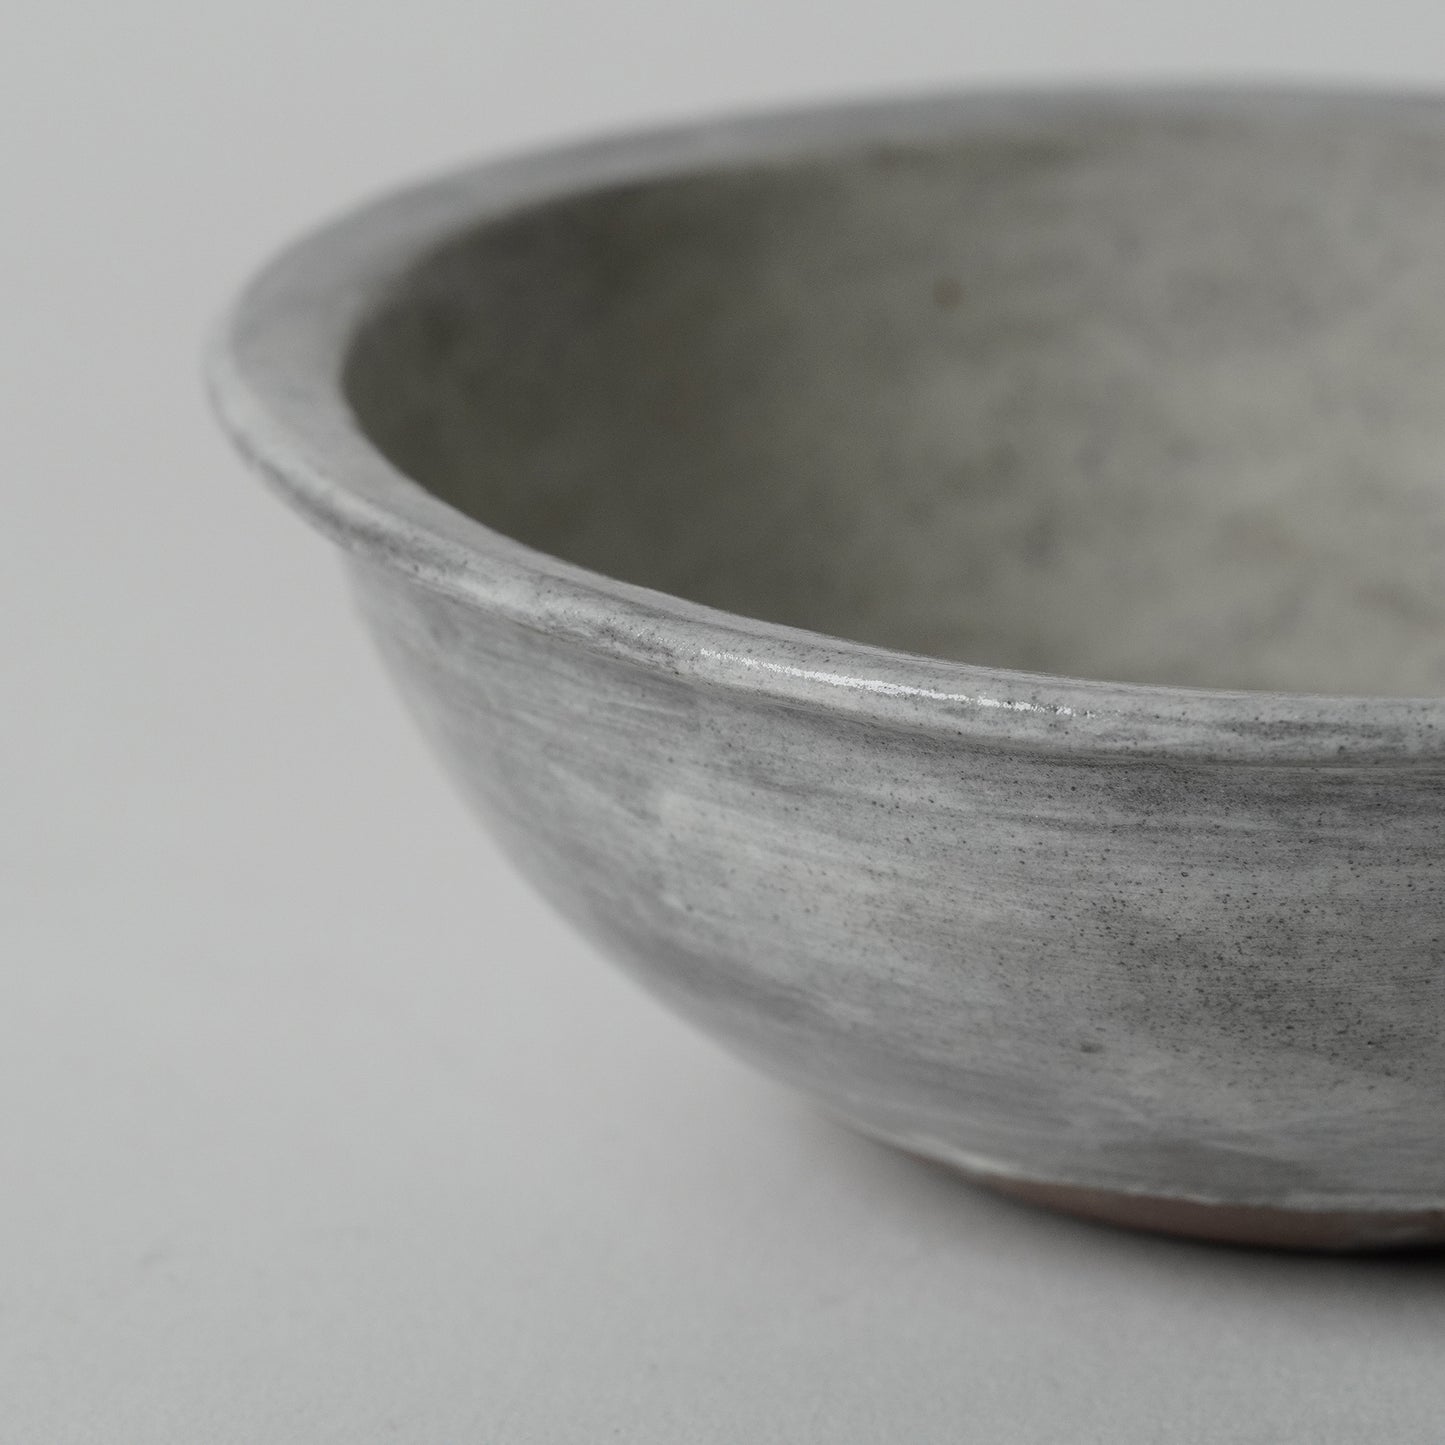 Aya Tokushima Small Bowl